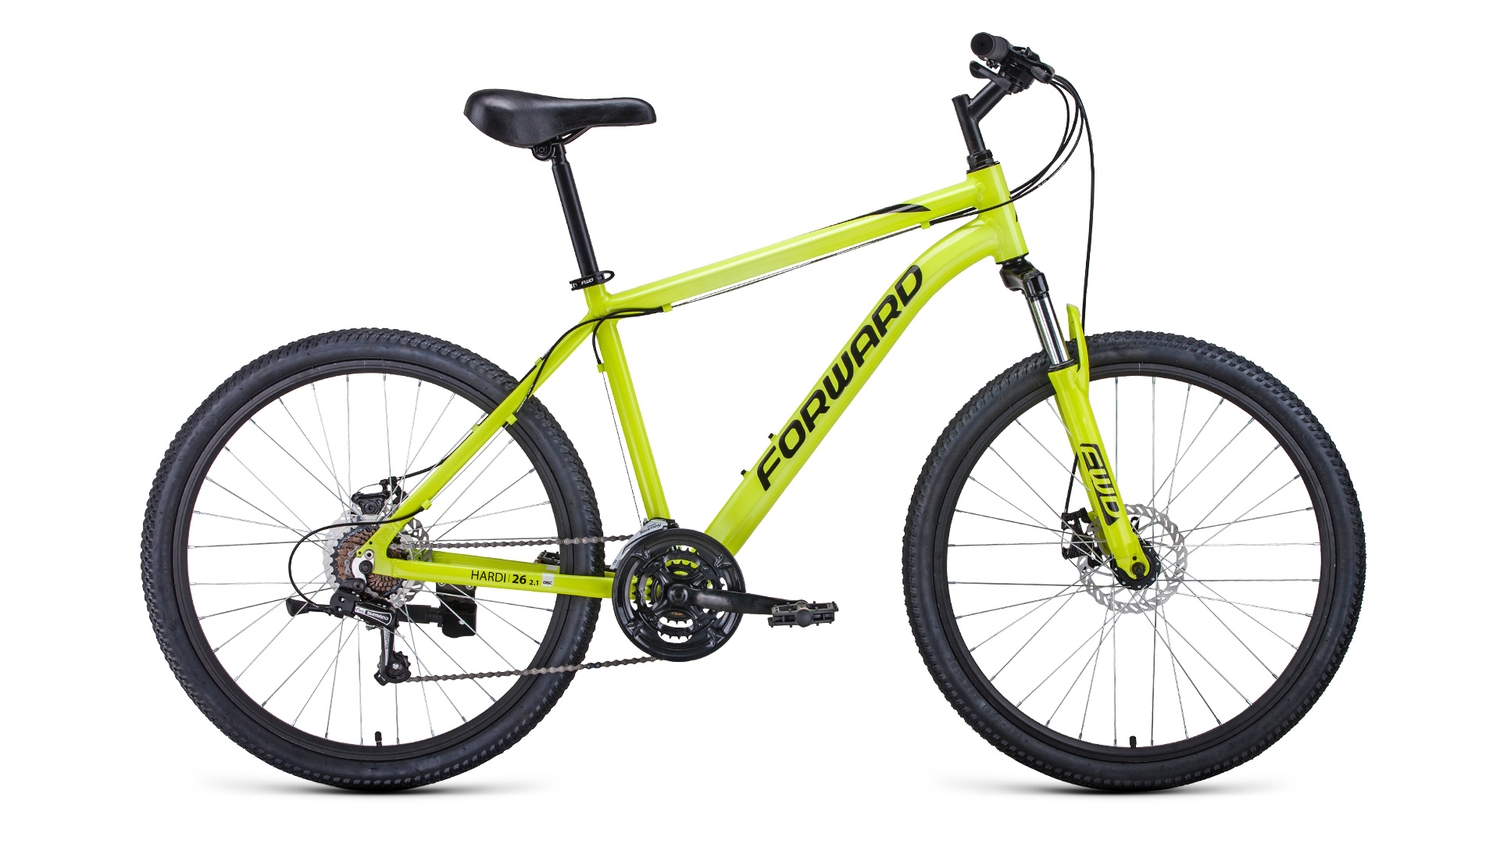 Горный велосипед Forward Hardi 26 2.1 D, год 2022, цвет Синий-Серебристый, ростовка 18